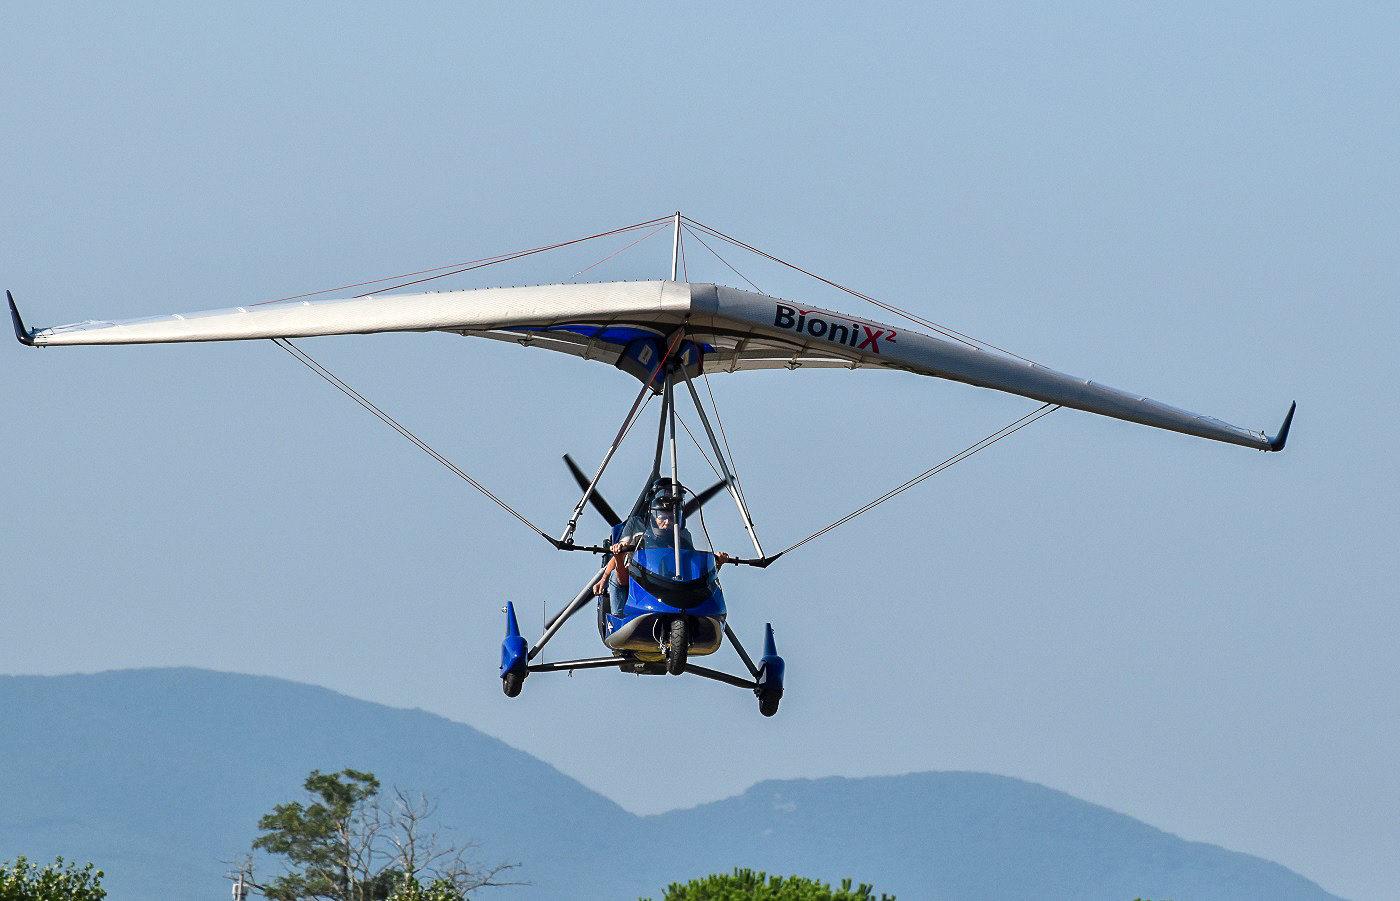 fly/en-vol-bionix2-tanarg-neo-en-vol-in-fly-ulm-pendulaire-ultralight-trike-wings-4.jpg